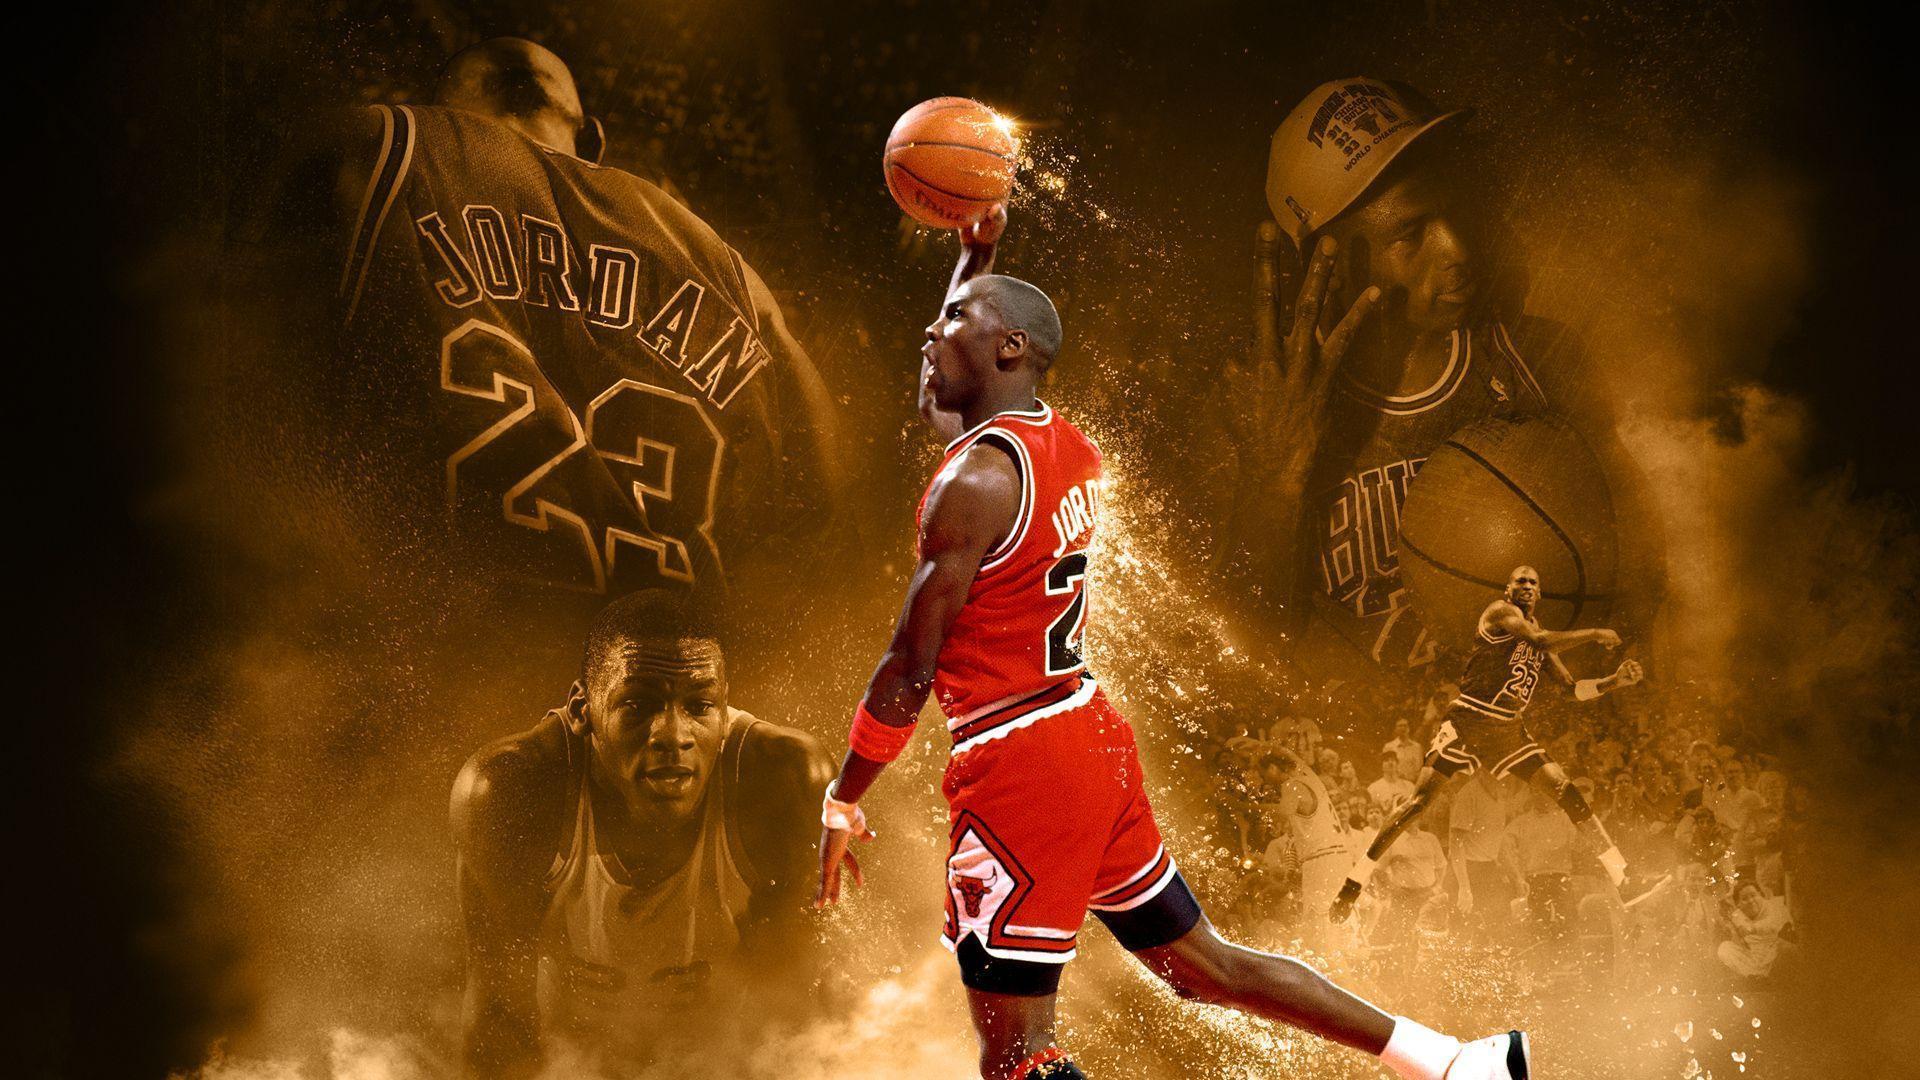 篮球之神——迈克尔·乔丹4k高清壁纸,持续更新,建议收藏